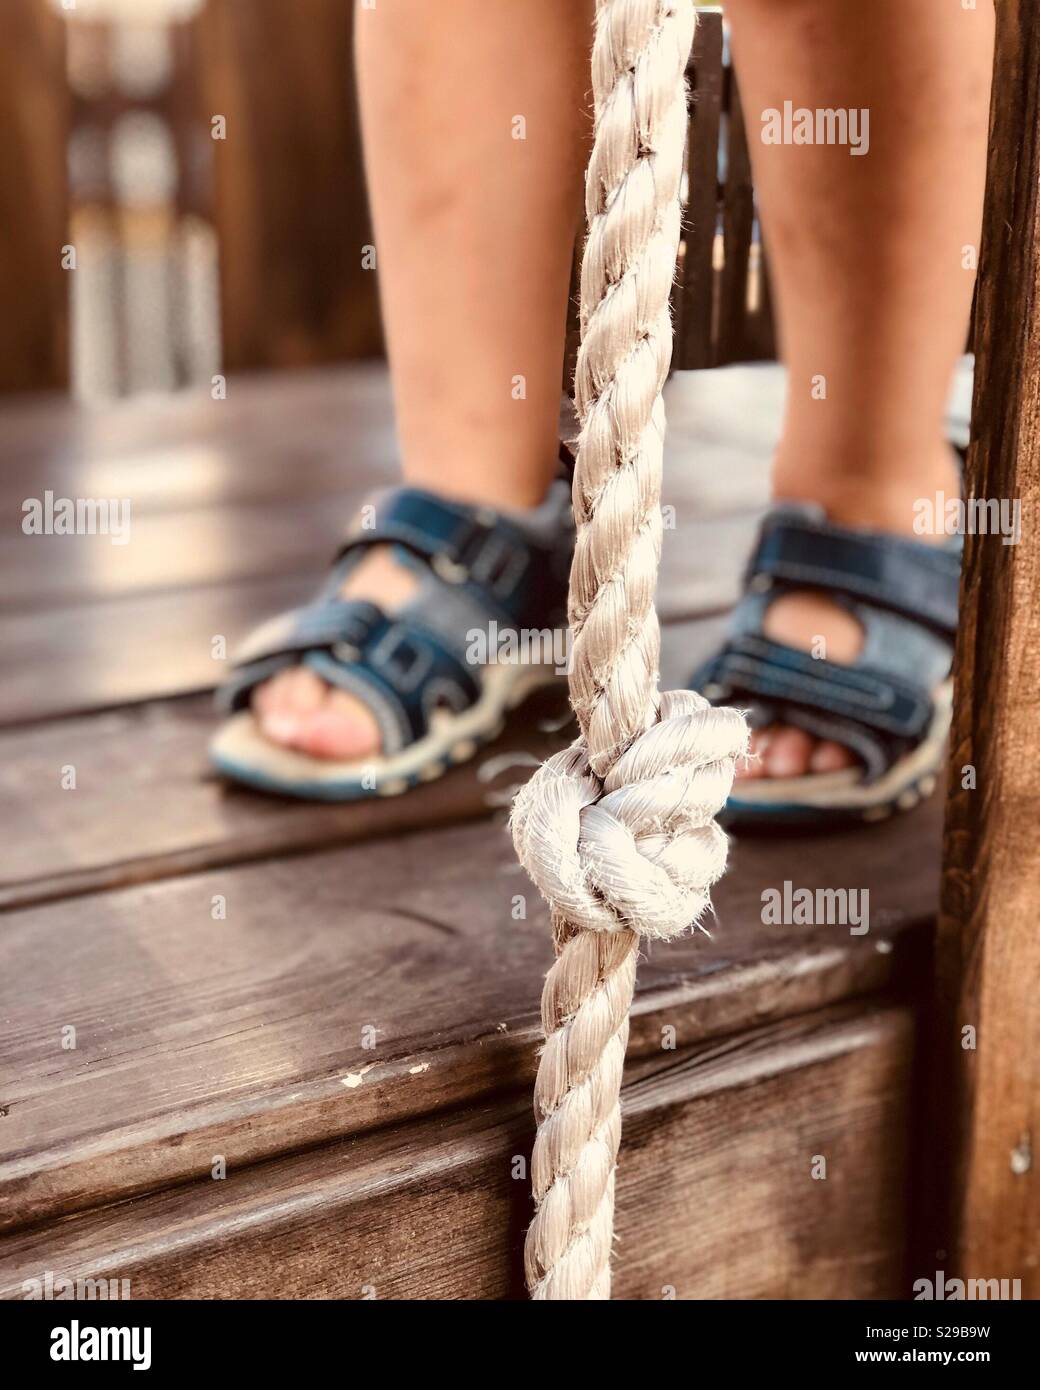 Tout-petit'pieds en sandales bleu sur une terrasse en bois avec une corde blanche Banque D'Images